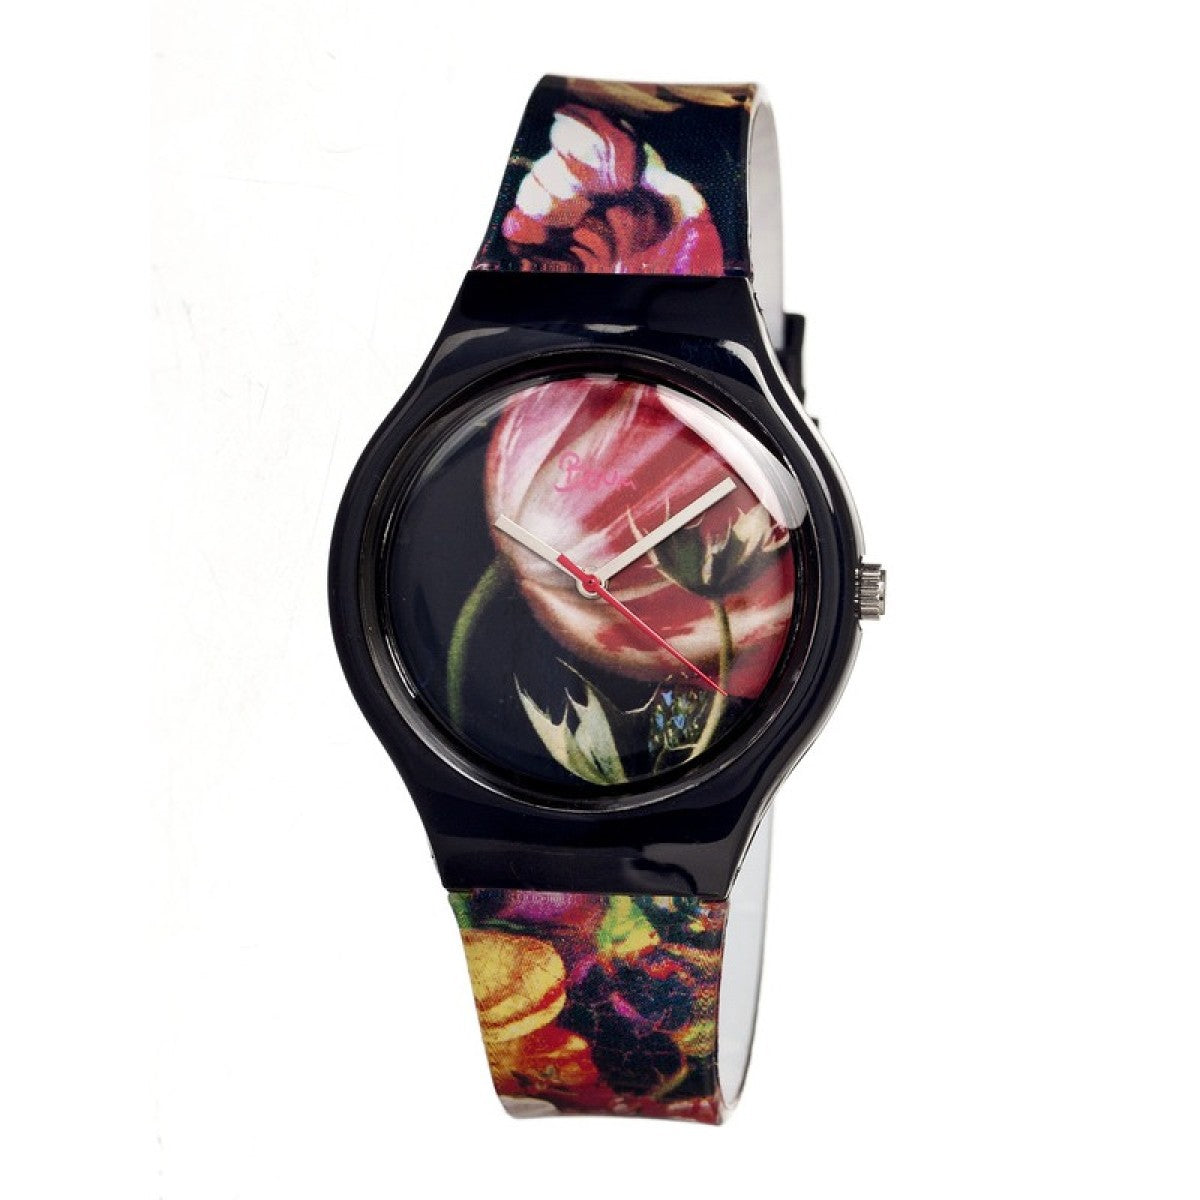 Boum Miam Unique-Print Ladies Watch - Black/Floral - BOUBM1604